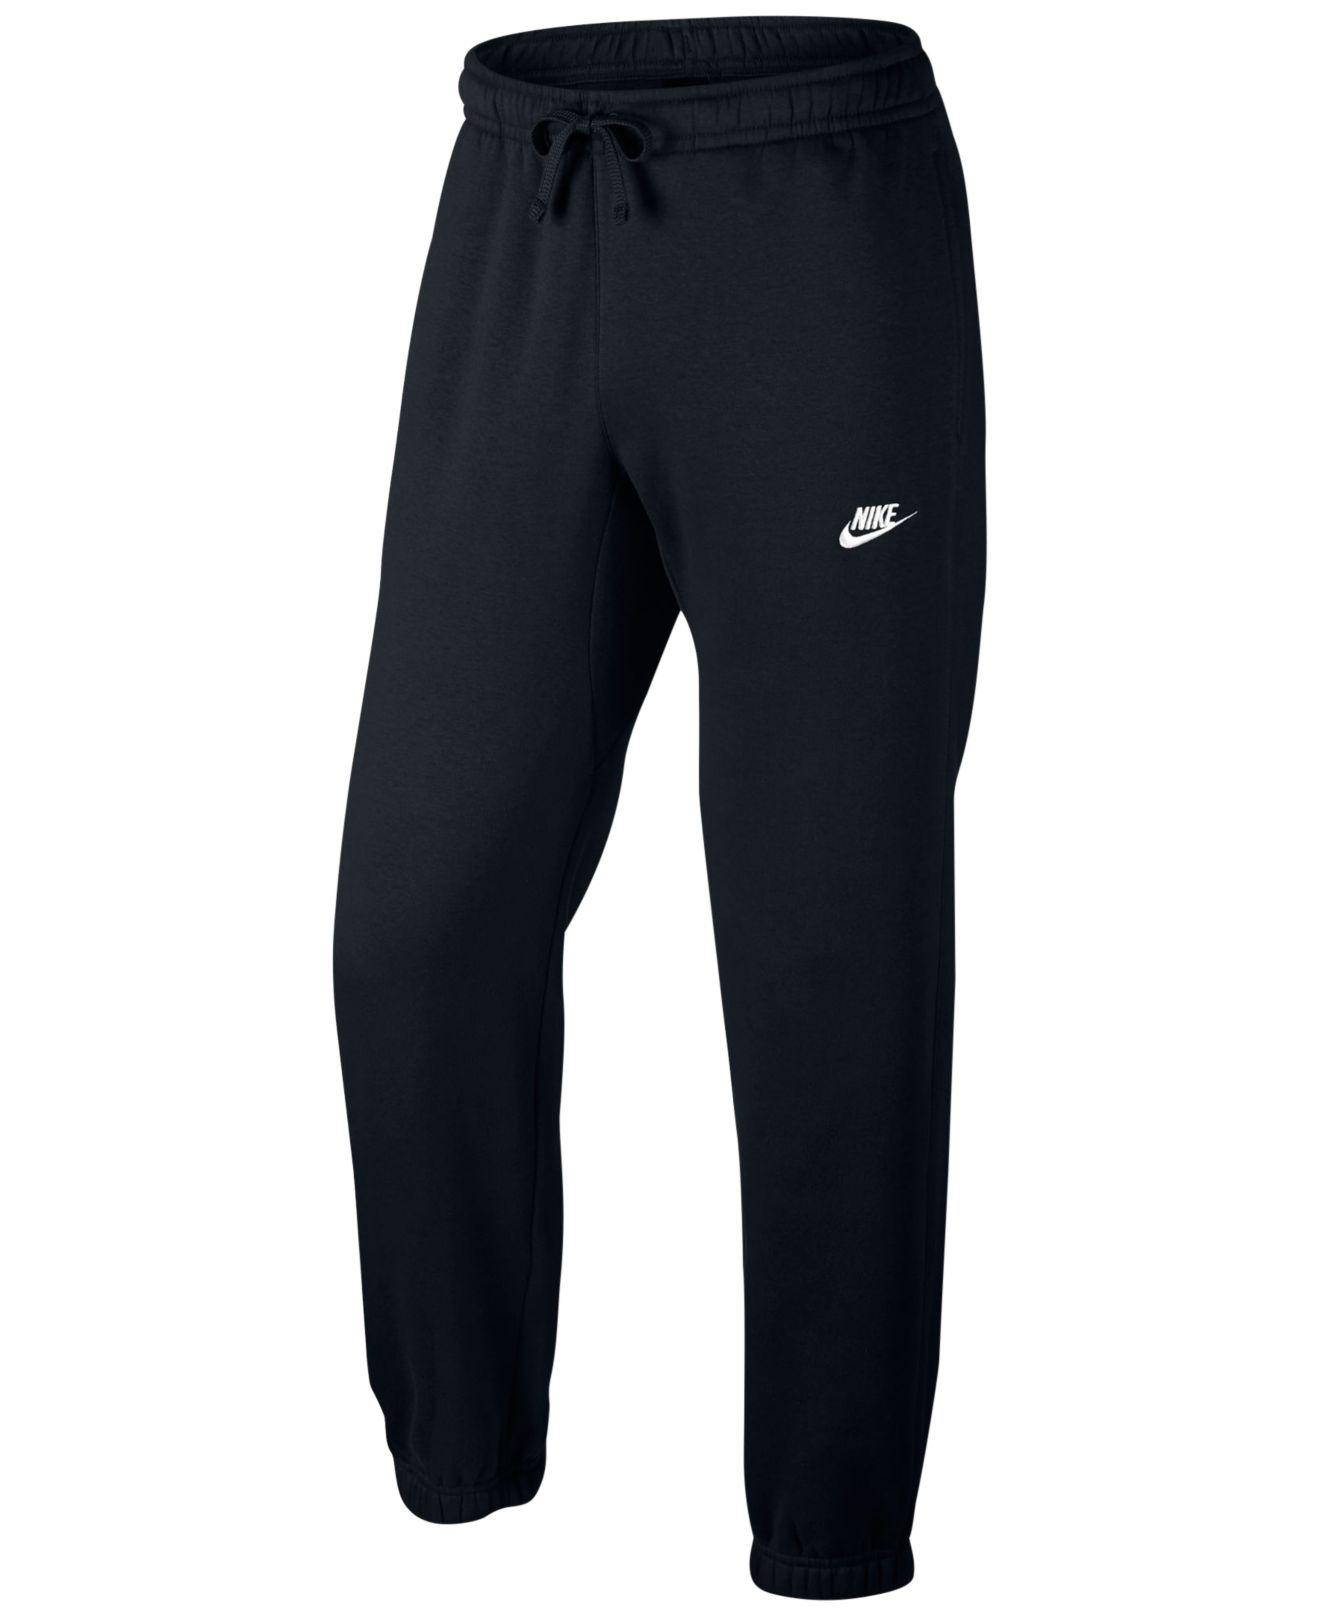 Nike Fleece Cuffed Bottom Pants in Black for Men - Lyst